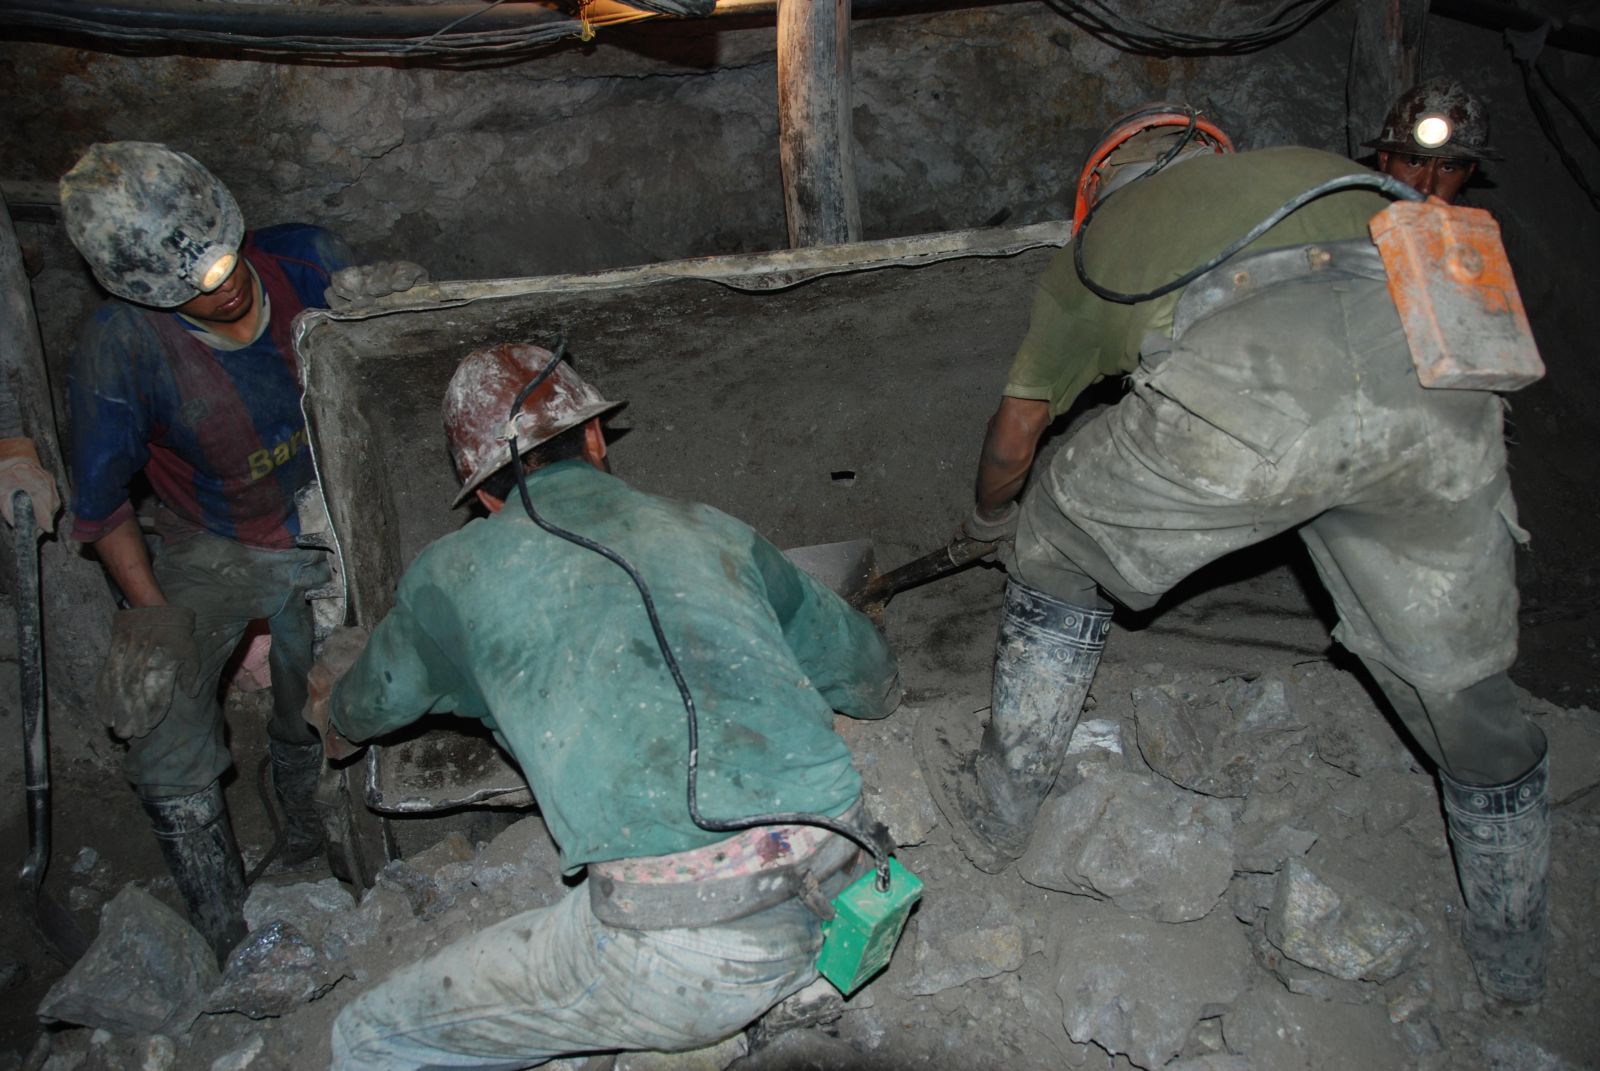 Bergarbeiter, die Gewalt erfahren oder gesehen haben, zeigen häufiger psychische Belastungsstörungen als jene ohne Gewalterfahrung. In einem bolivianischen Bergwerk.